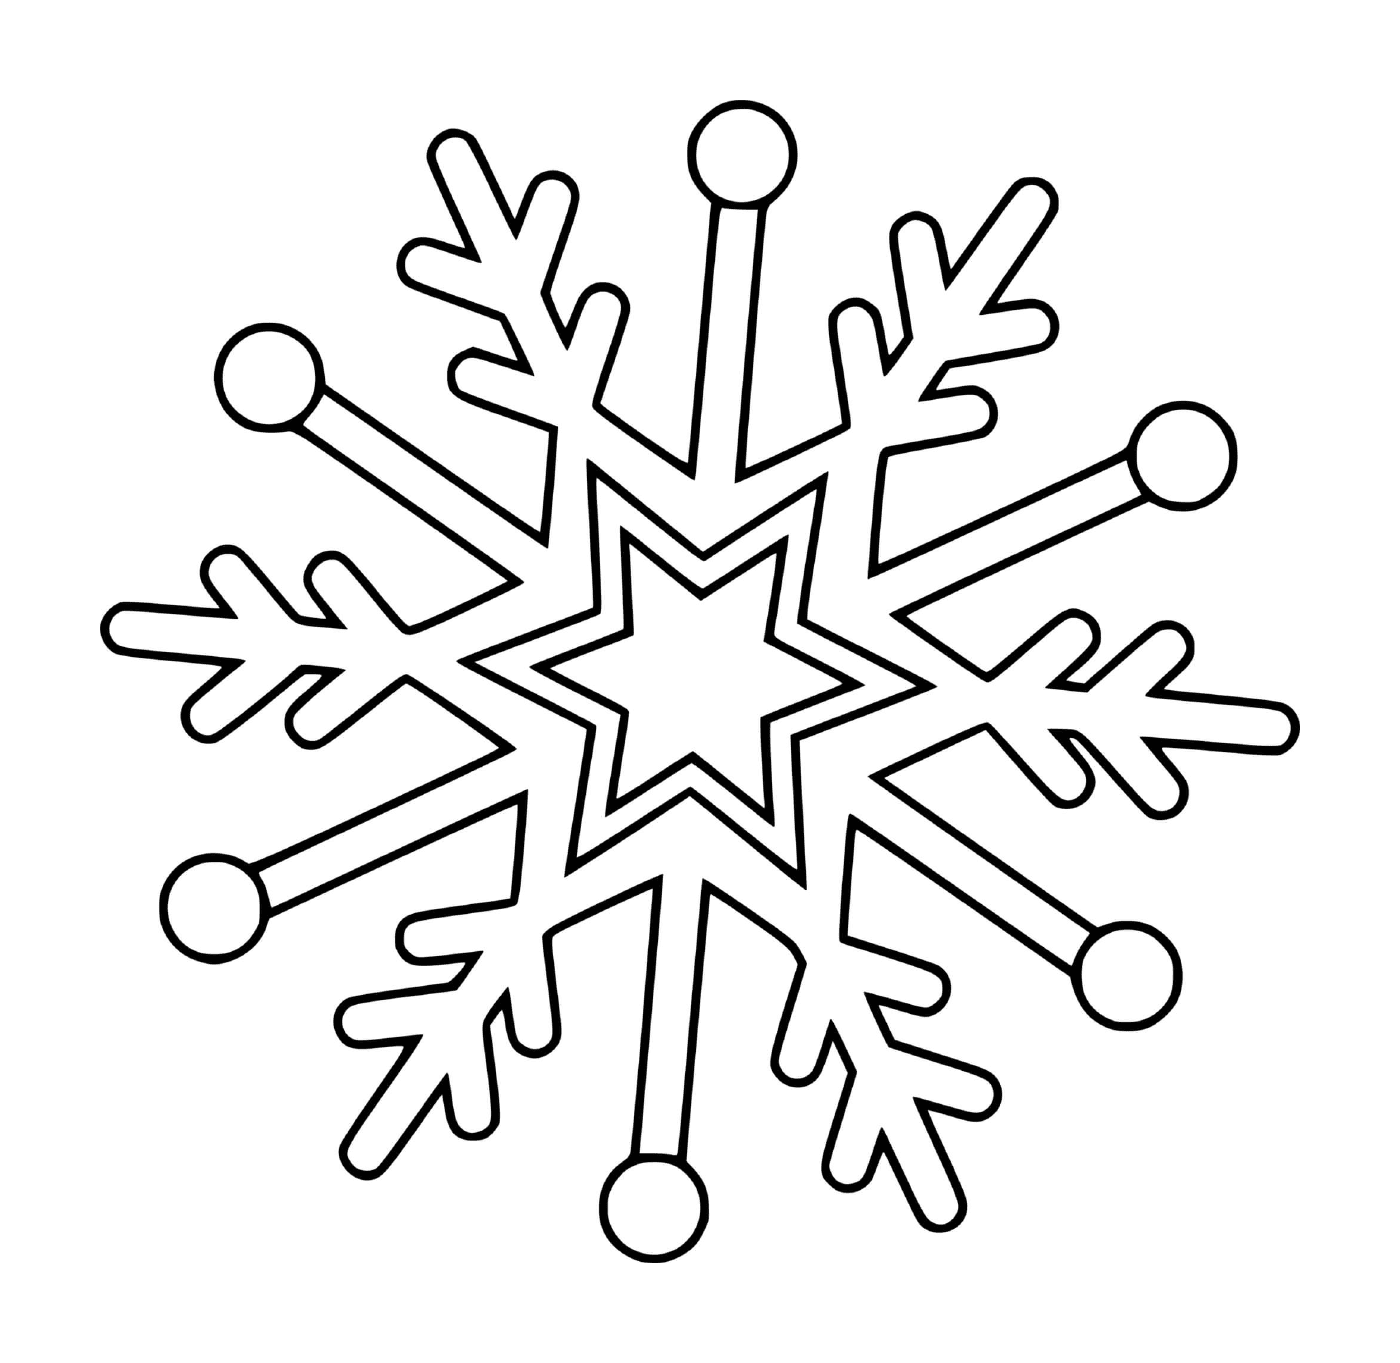  Floco de neve com uma estrela e uma árvore 